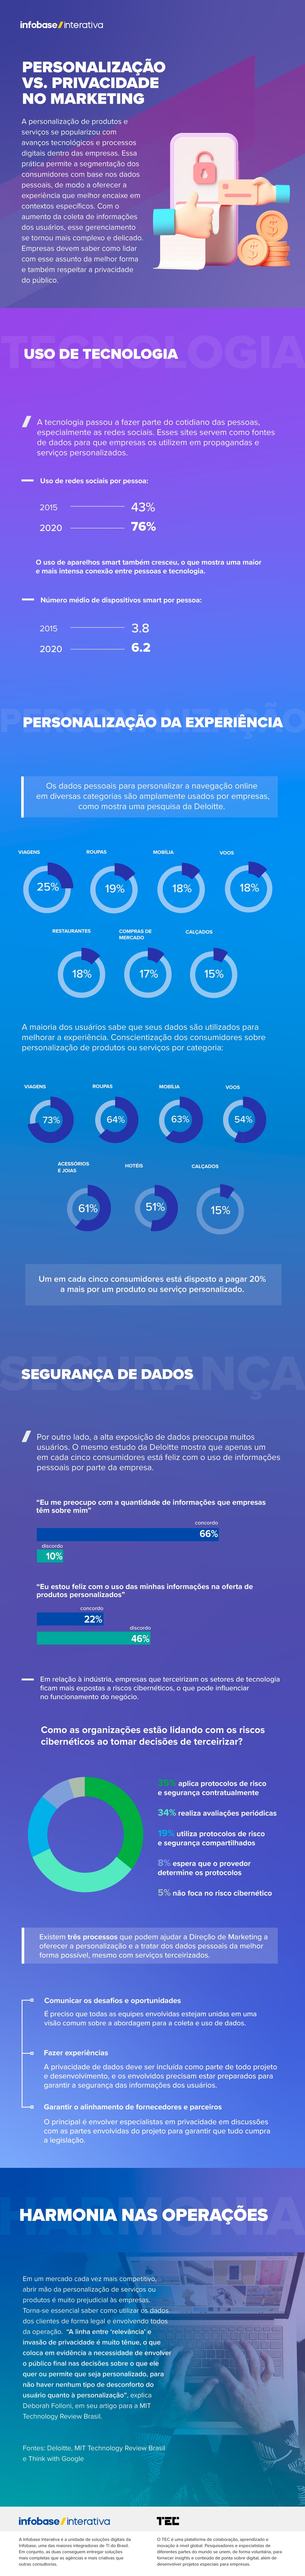 Brasil gera quase 15% do nosso faturamento global” - ﻿Games Magazine Brasil